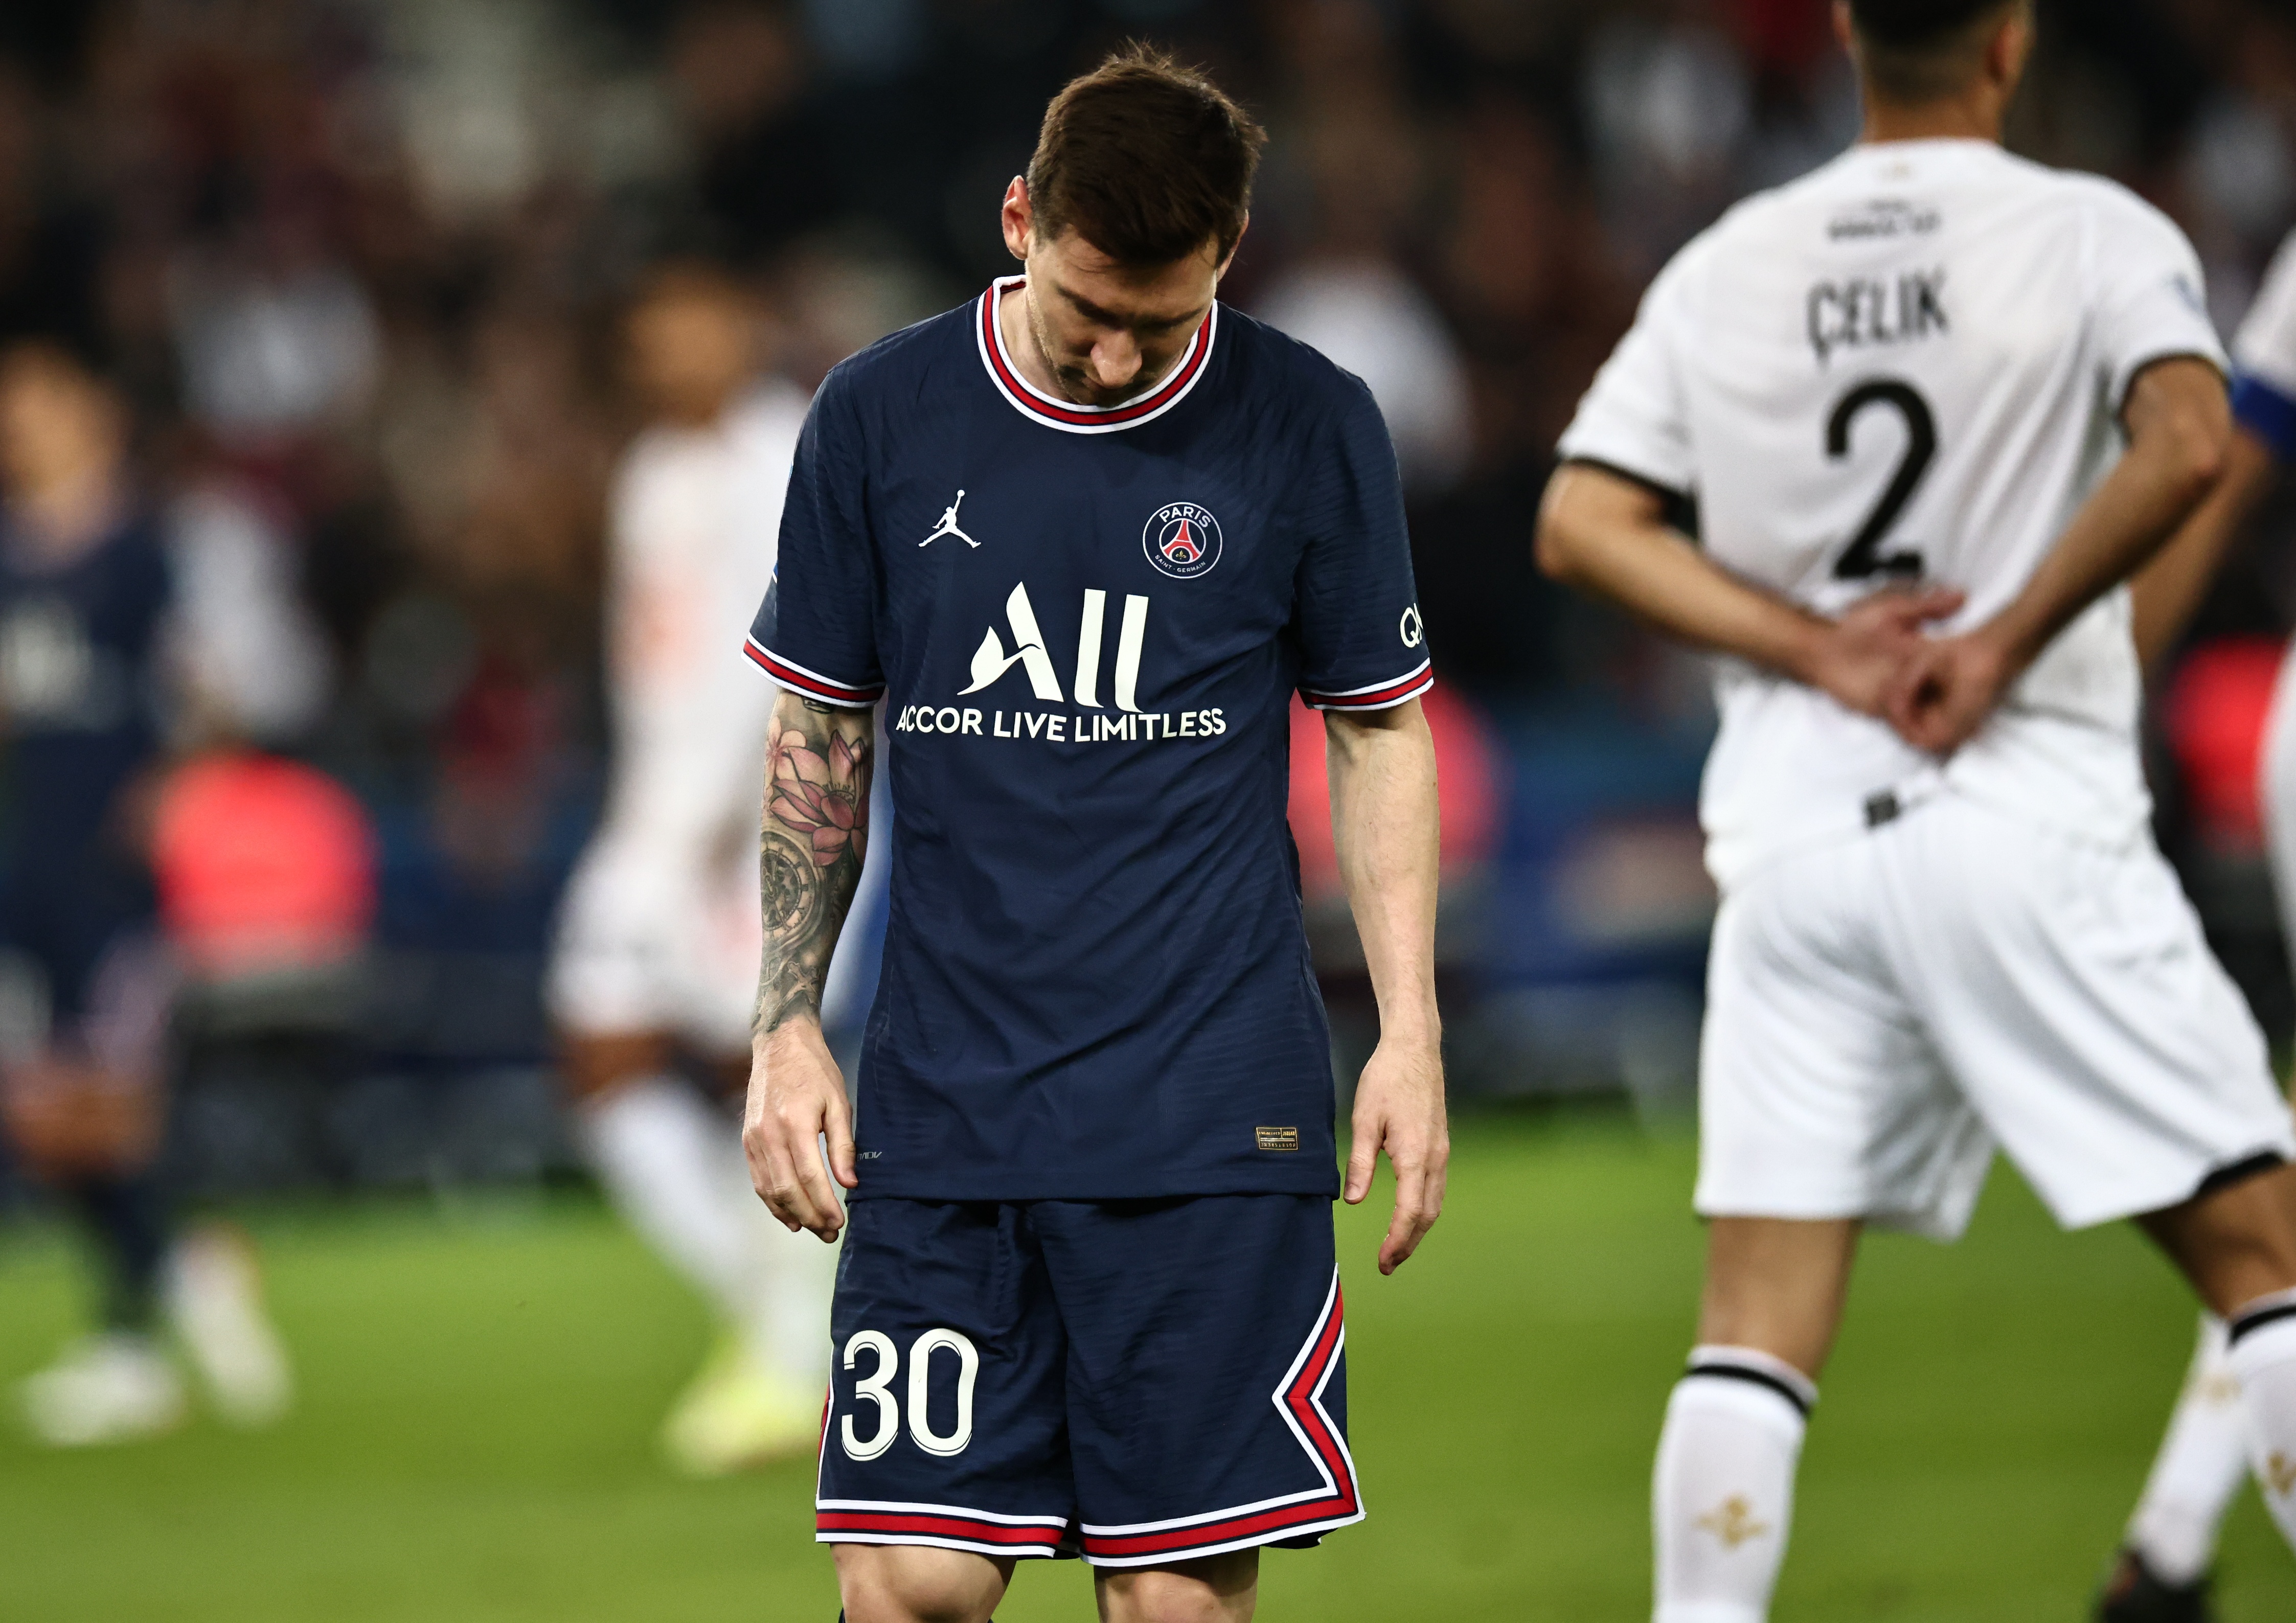 El semblante de Messi ante Lille dejó preocupados a todos (REUTERS/Sarah Meyssonnier)